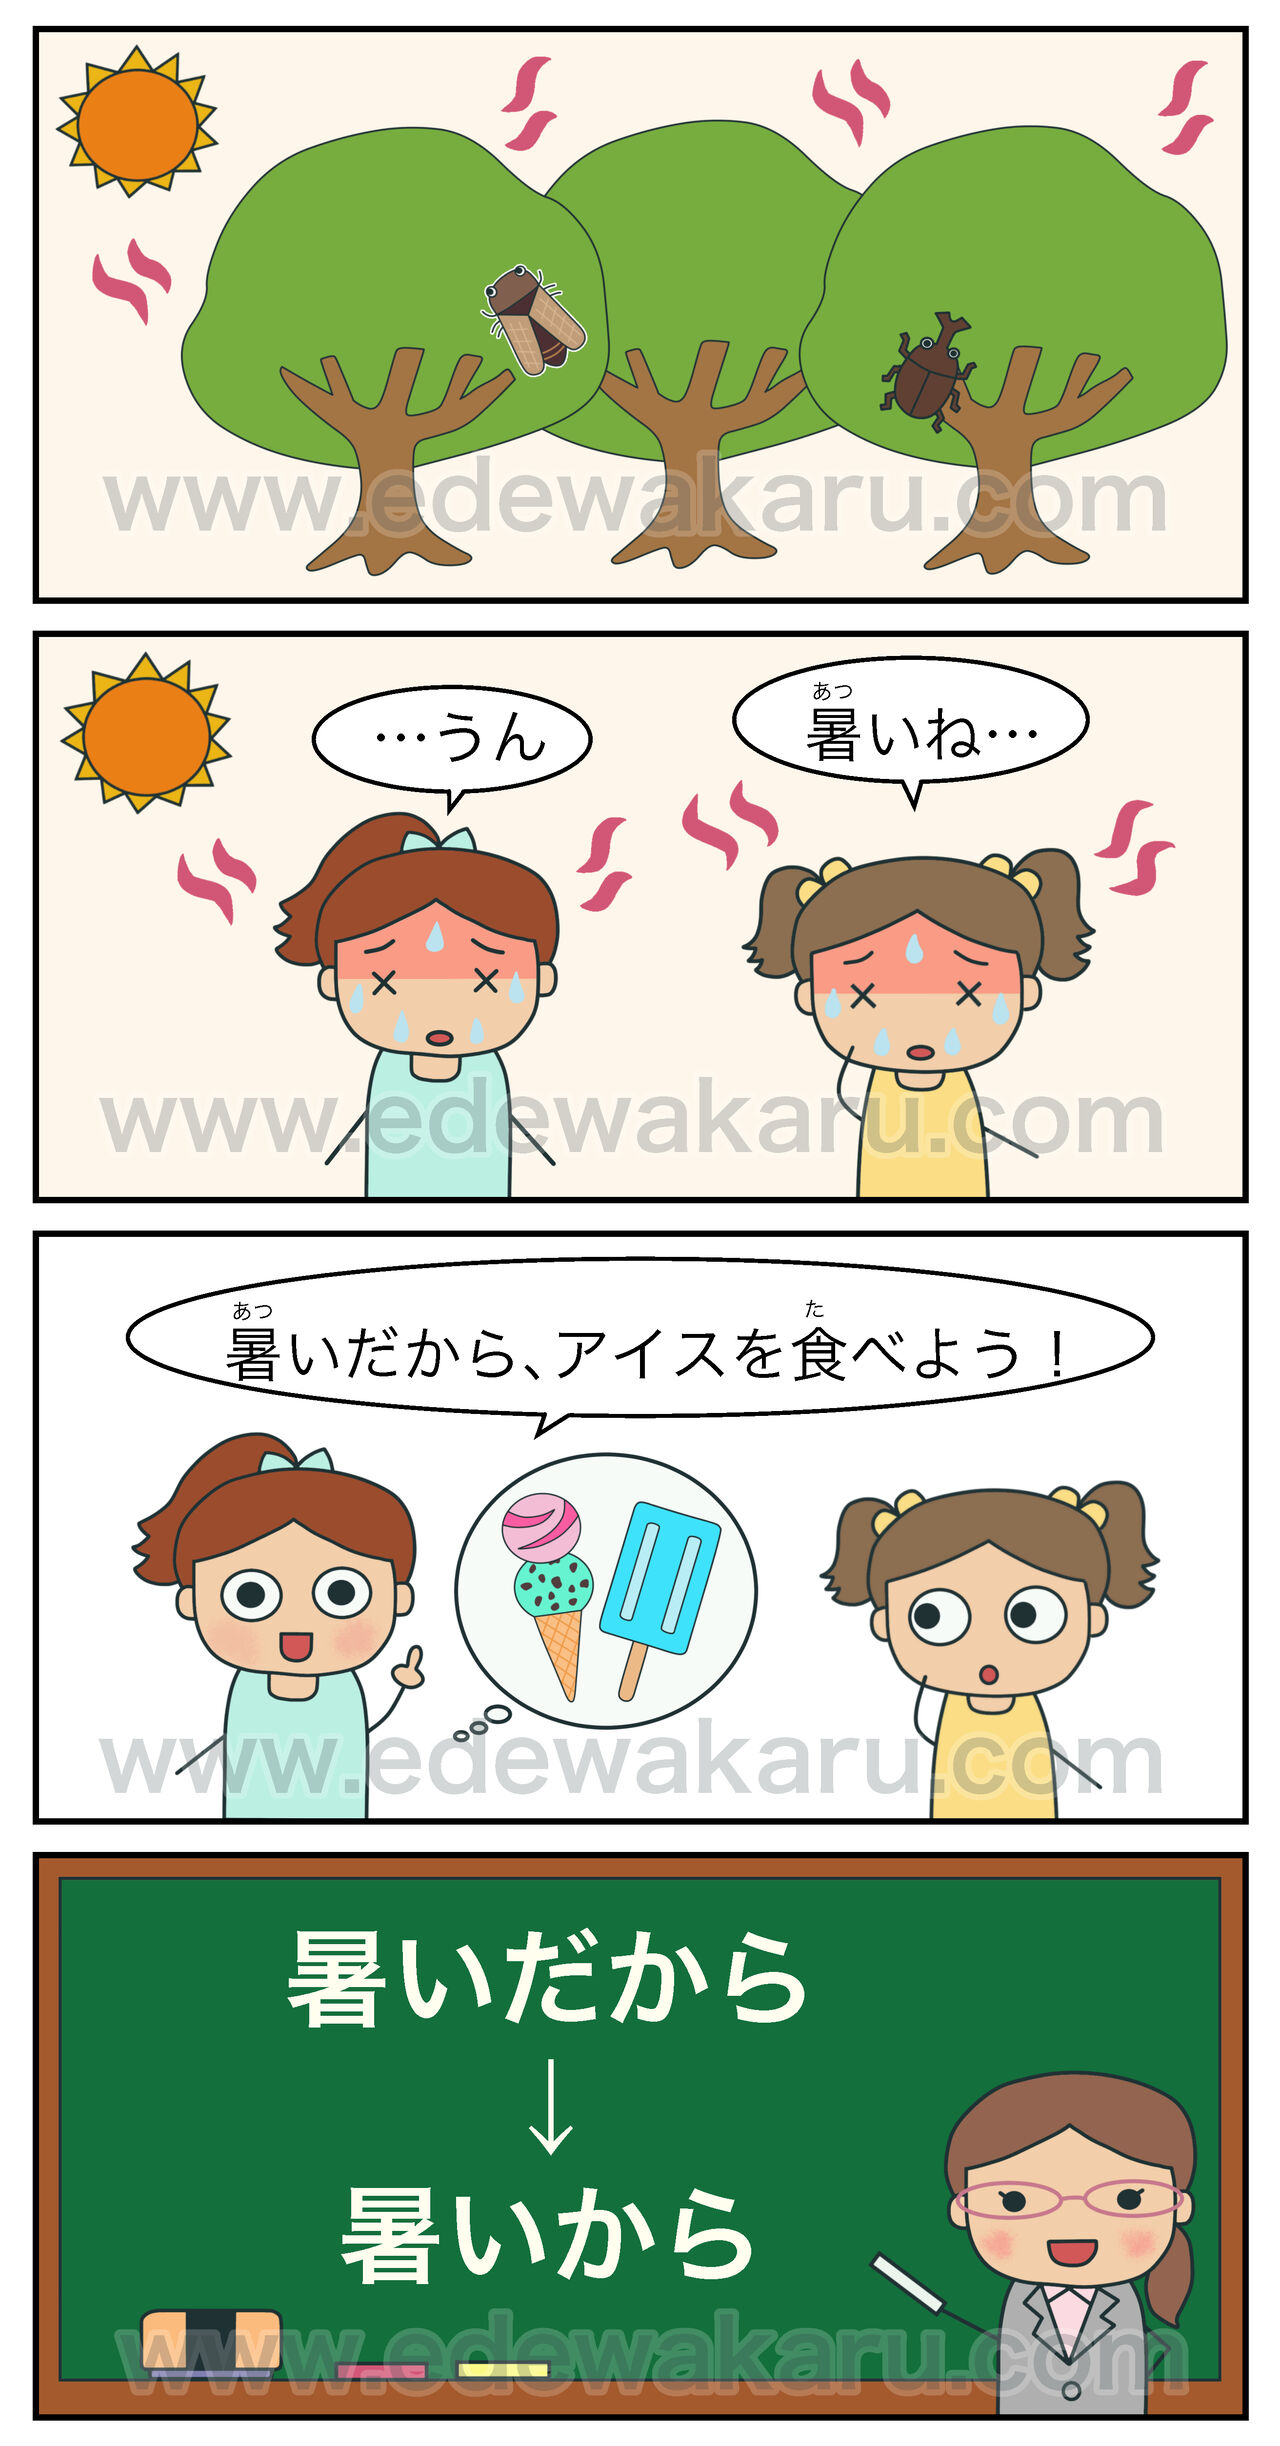 暑いだから アイスを食べよう 間違った日本語 絵でわかる日本語